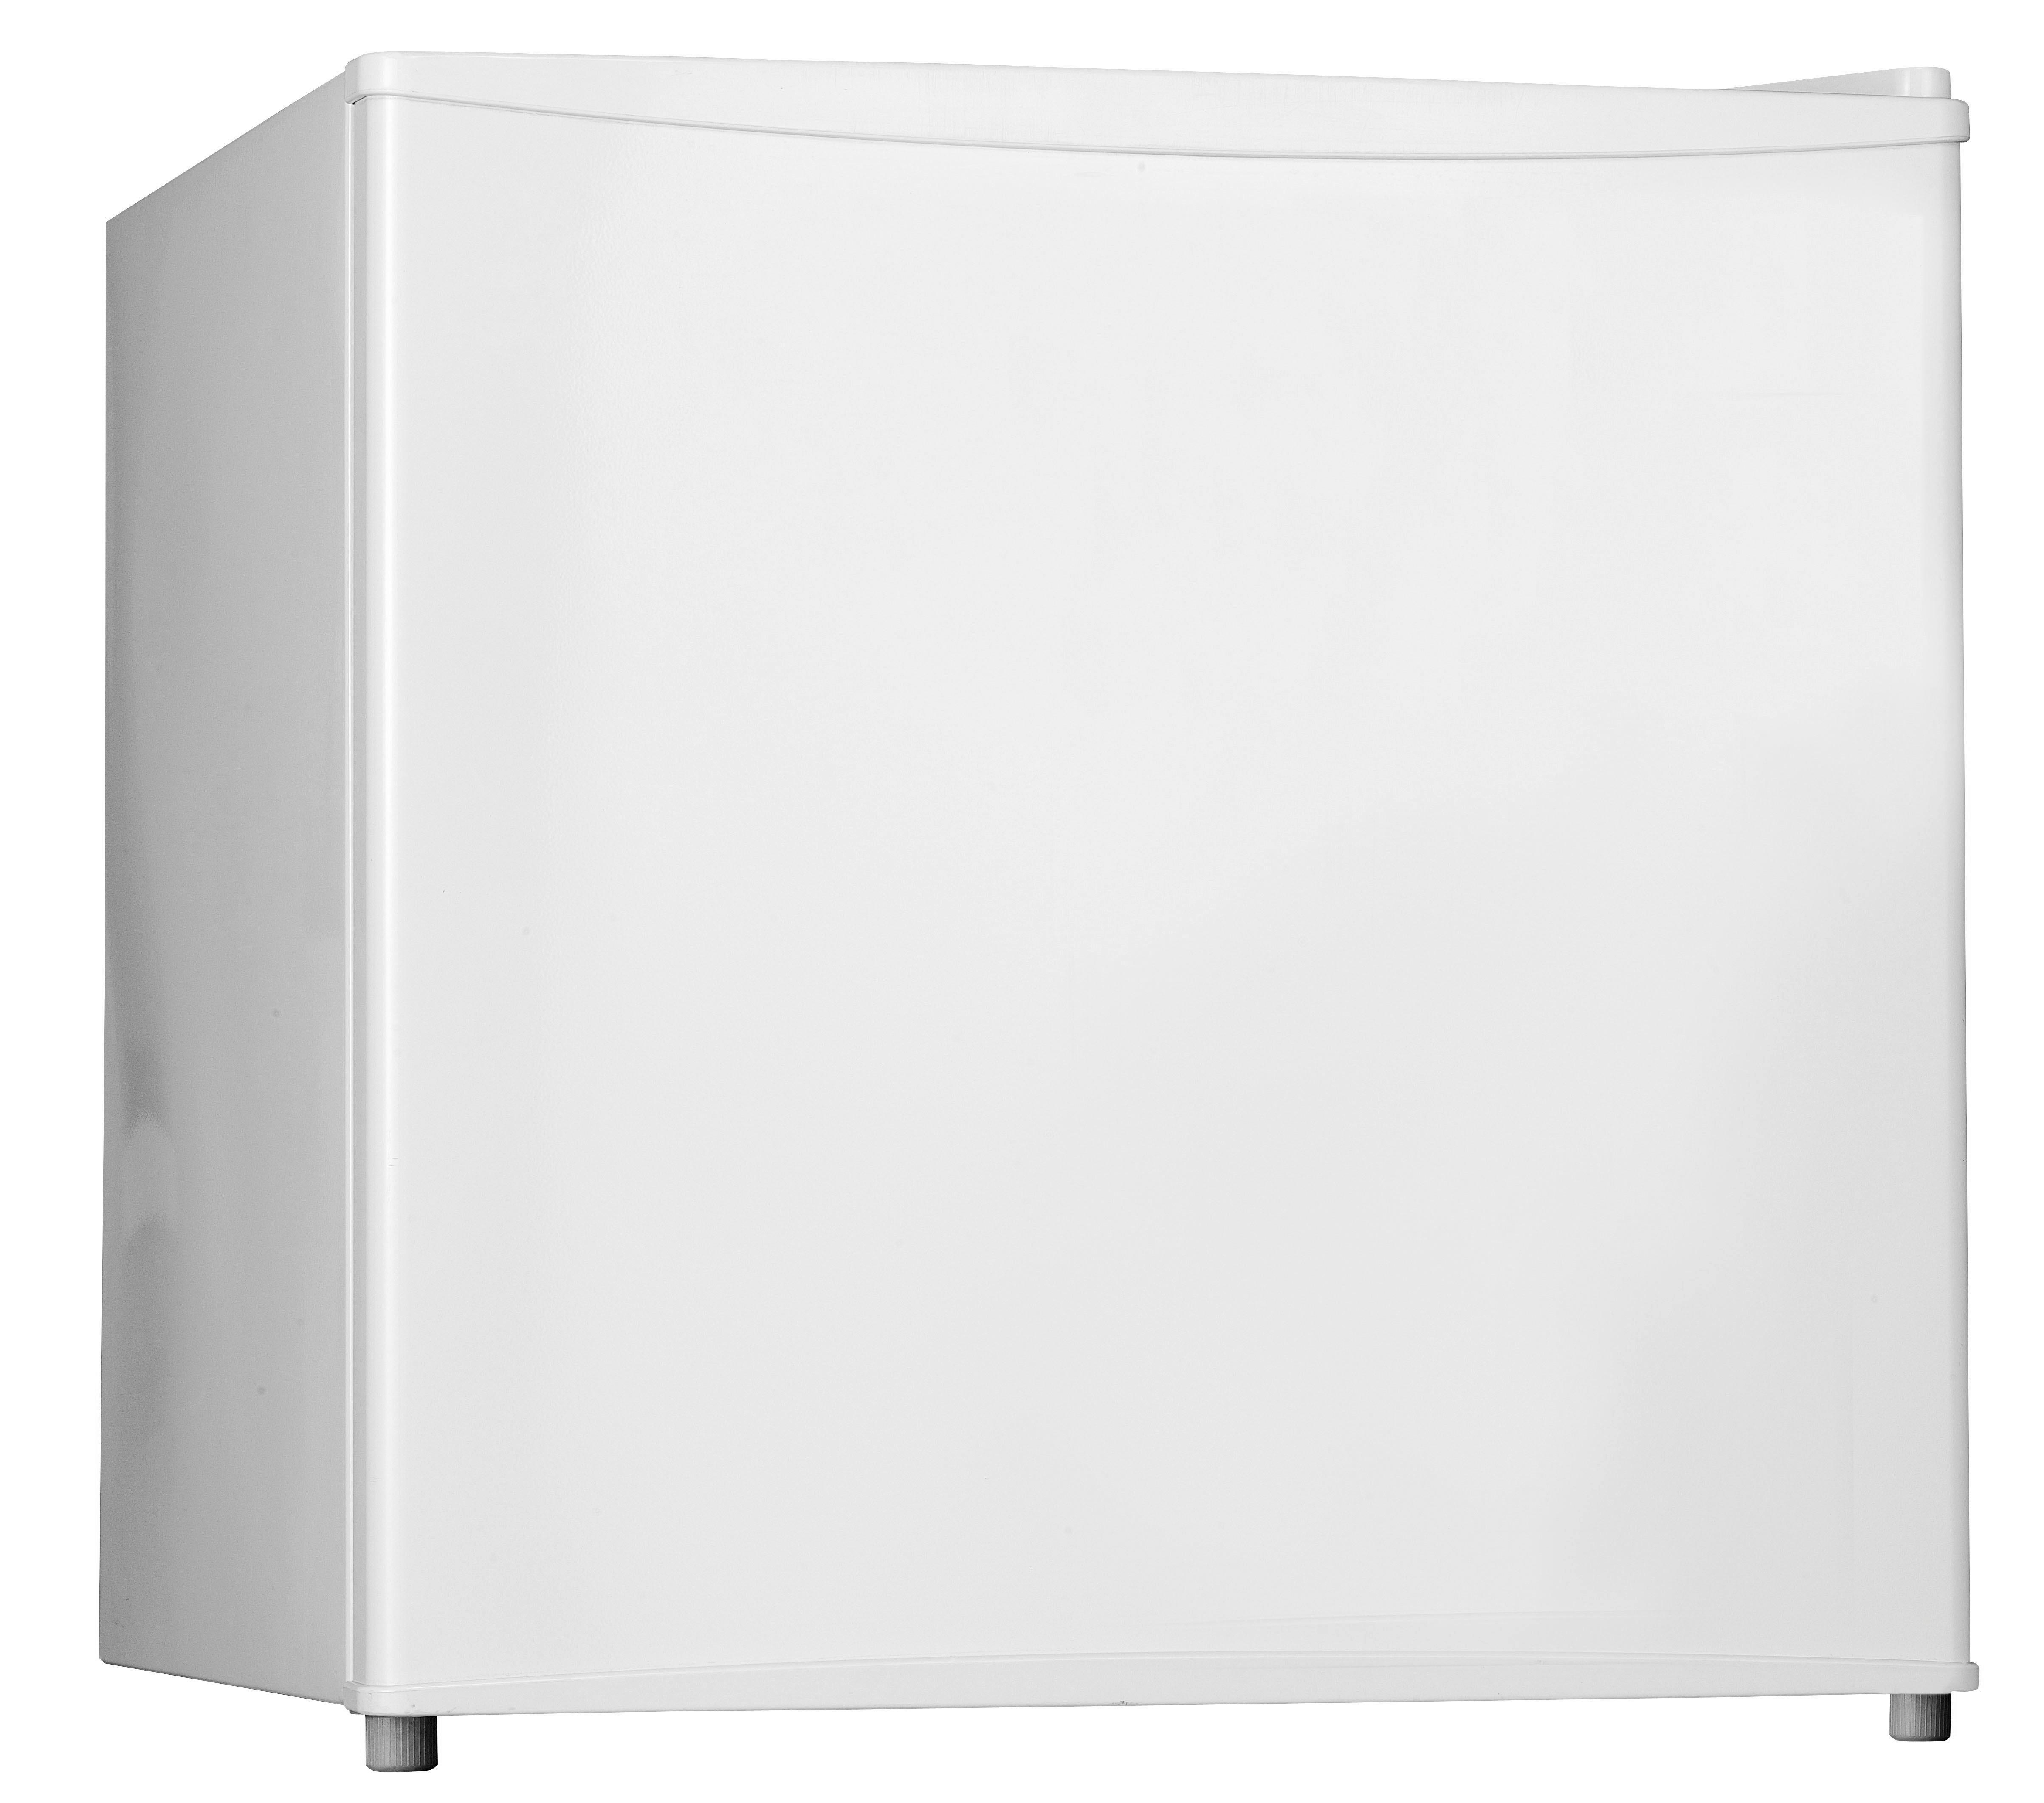 Kühlschrank Kb 1550 Weiß 43 L Freistehend mit Eisfach - Weiß, KONVENTIONELL, Metall (47,2/49,2/45cm) - Silva Schneider